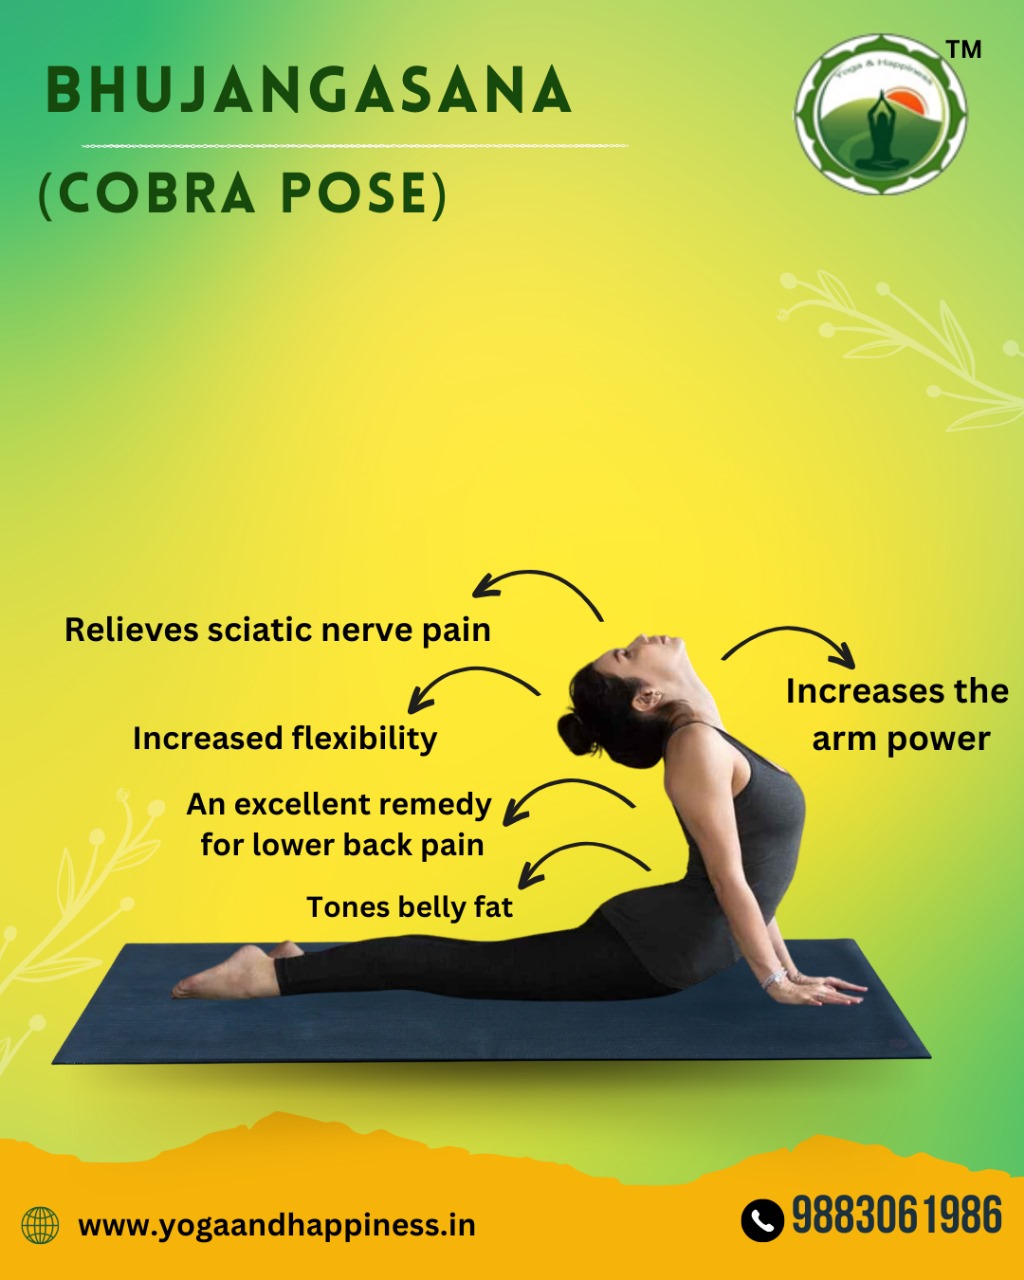 Bhujangasana: Improve Your Posture and Flexibility | by Yogarishi | Medium